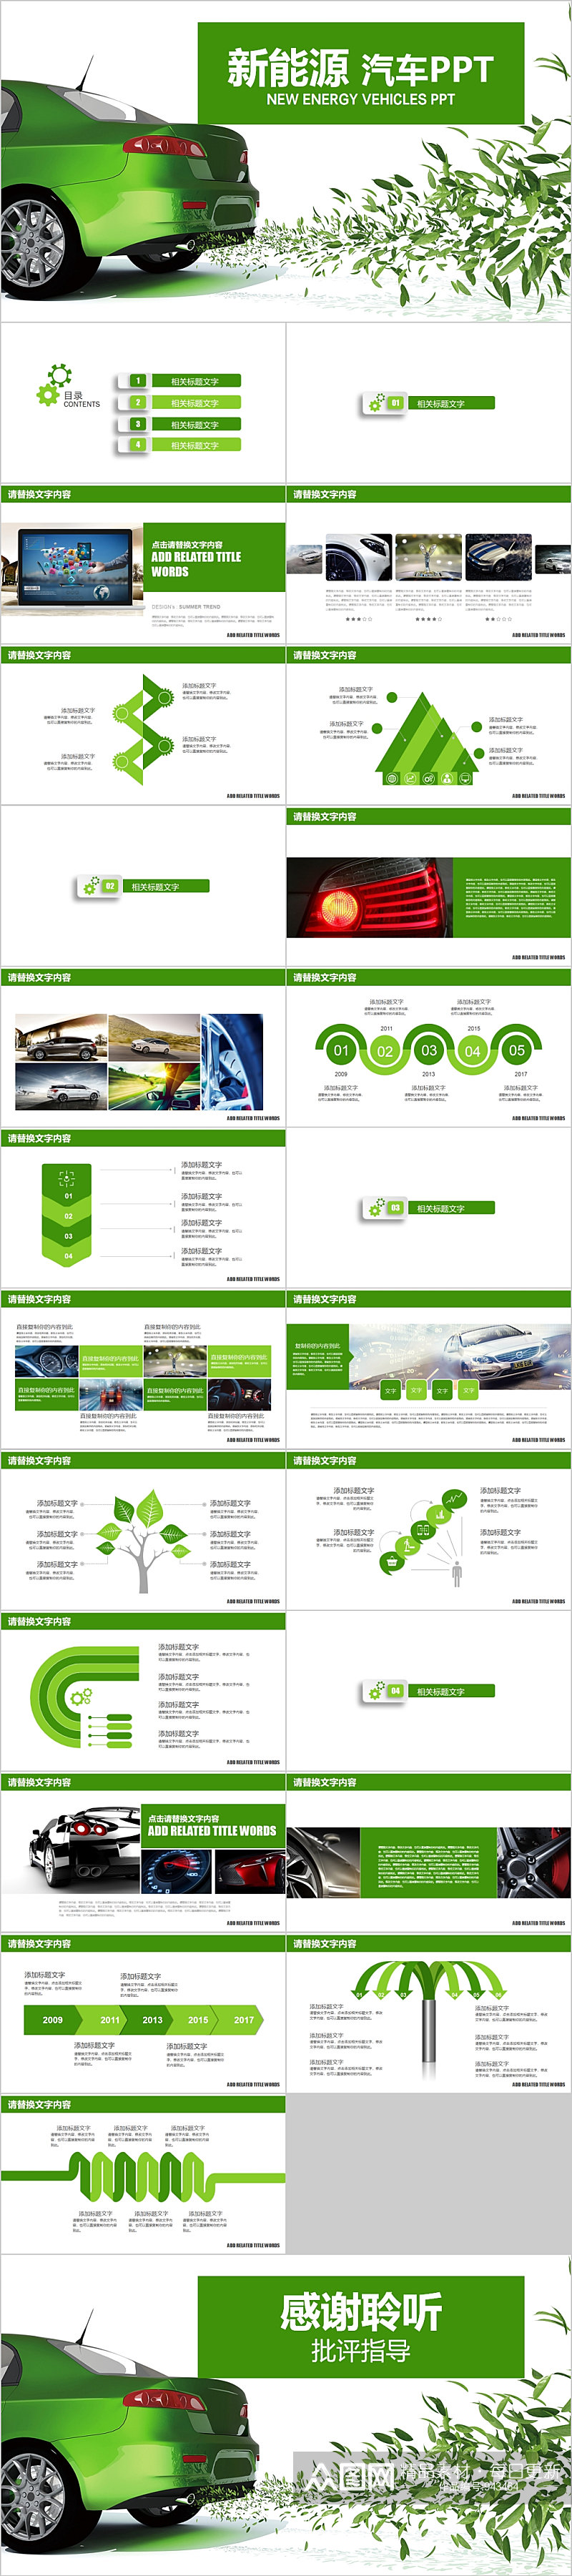 新能源汽车绿色PPT模板素材